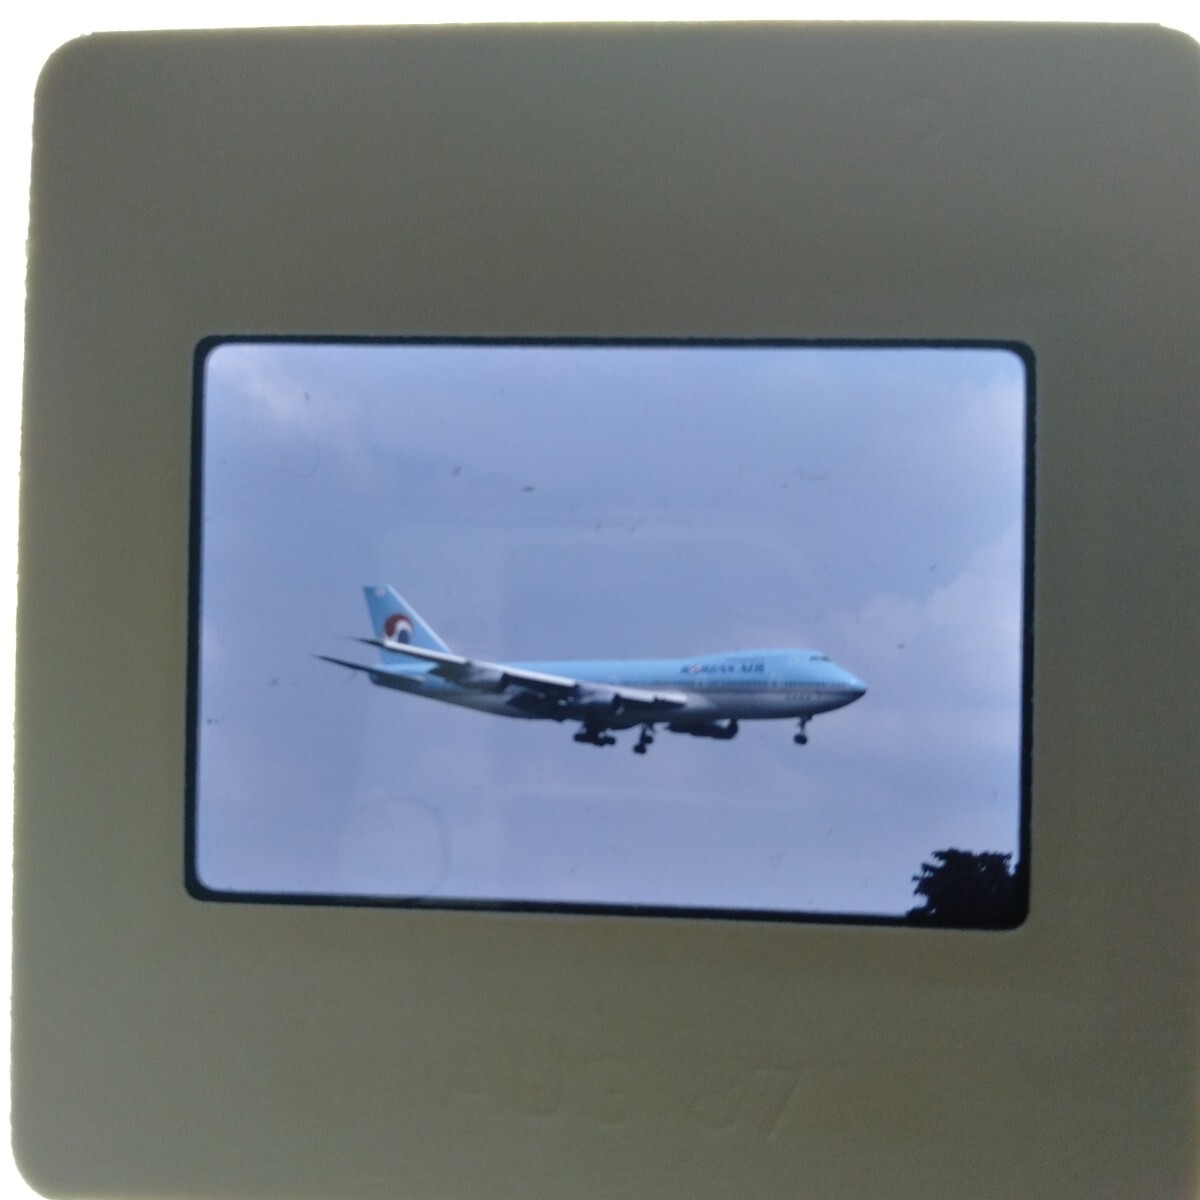 ノ088 航空機 飛行機 旅客機 NCA PIA 大韓航空 ネガ カメラマニア秘蔵品 蔵出し コレクション 15枚まとめて_画像5